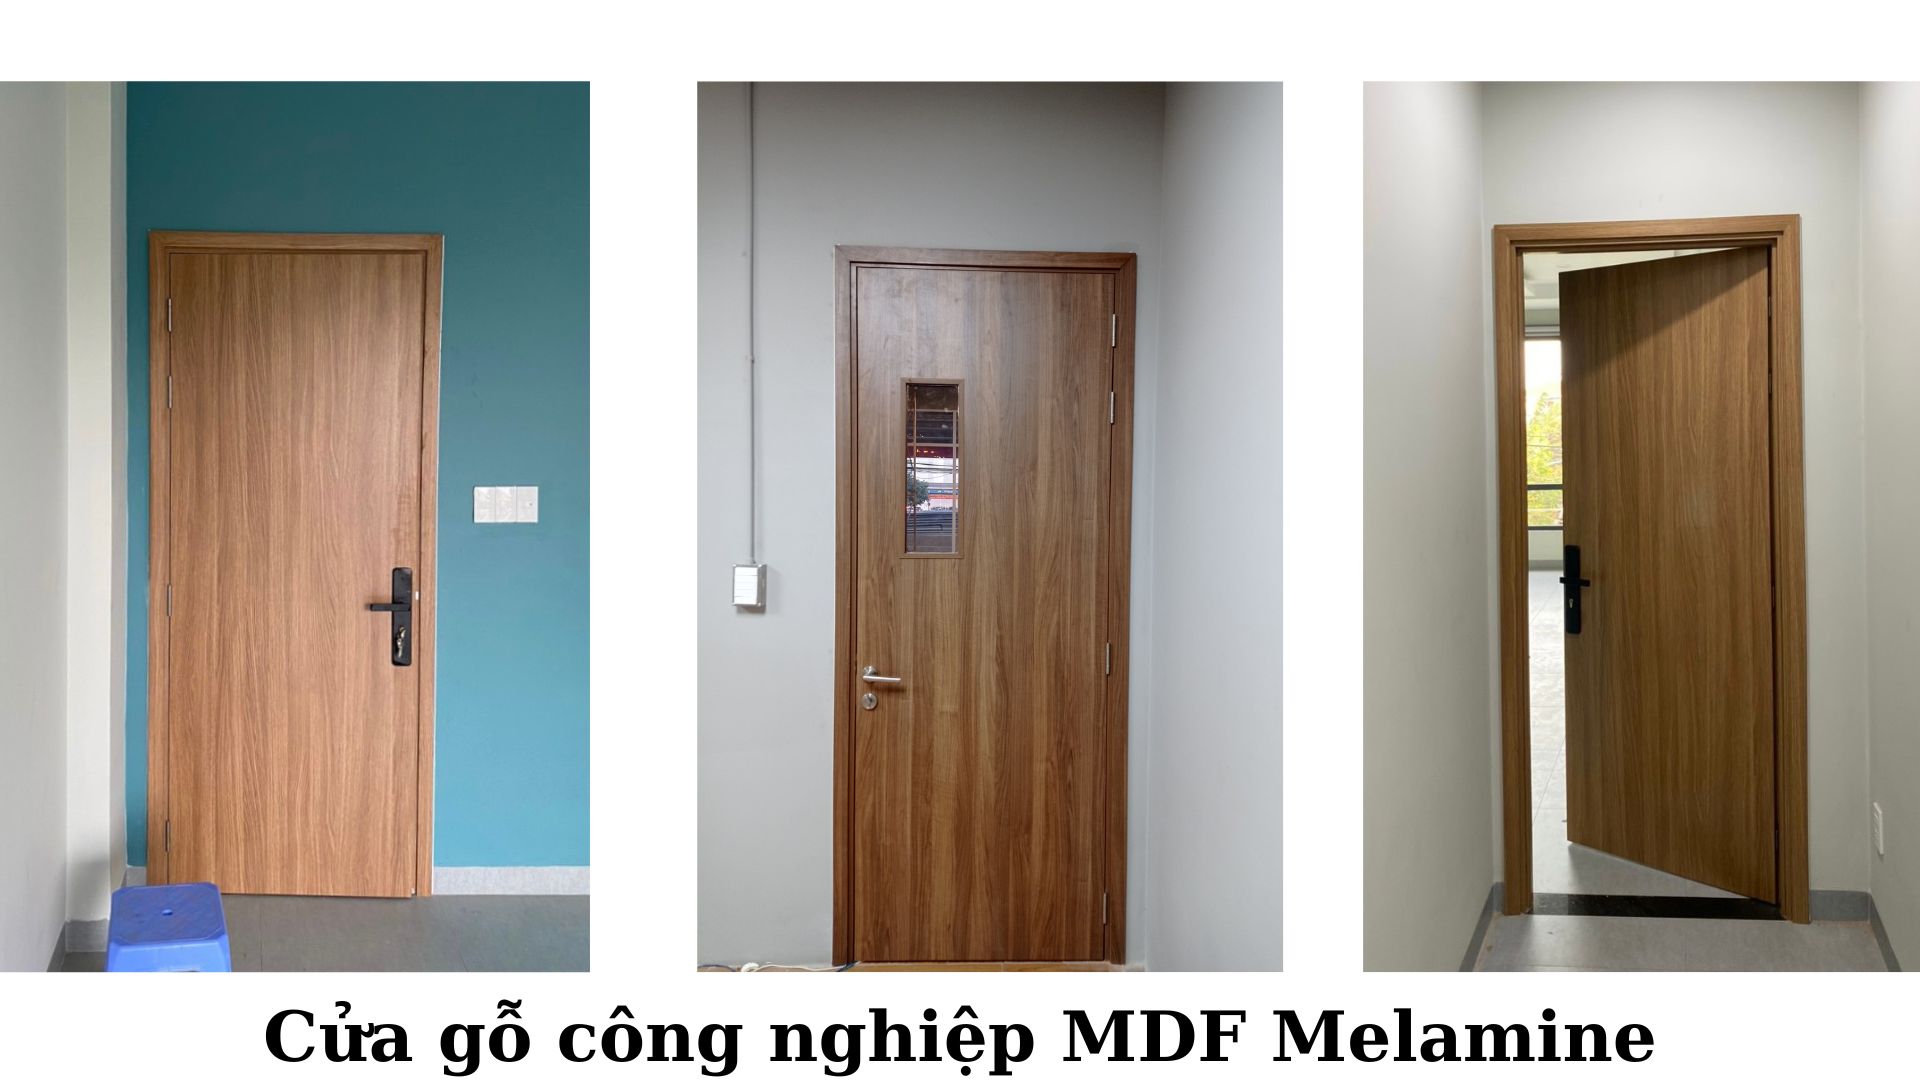 Cửa MDF Melamine tại Quận 12 